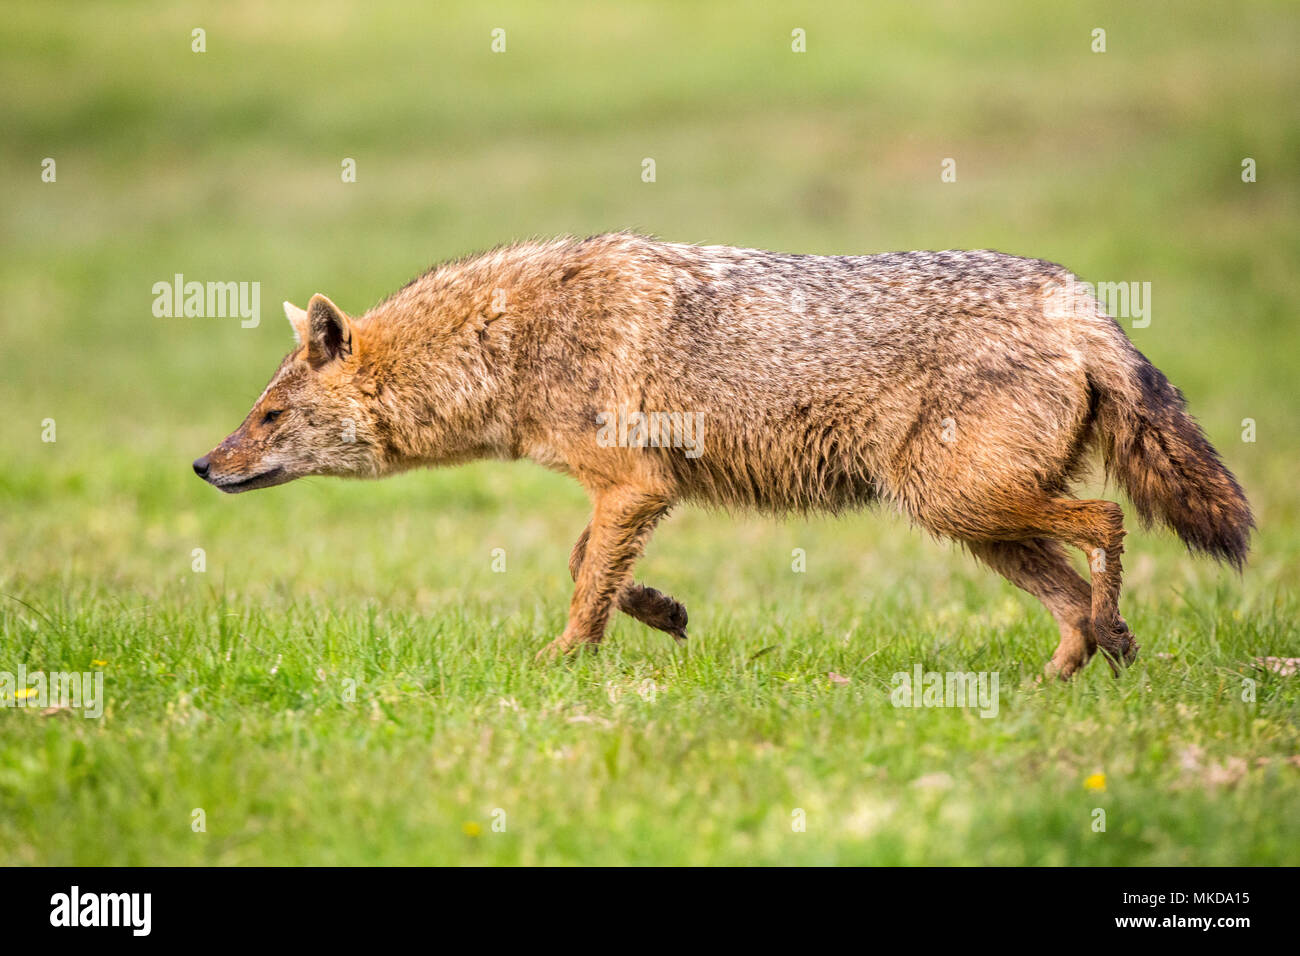 European jackal (Canis aureus moreoticus), Danube Delta, Romania Stock Photo